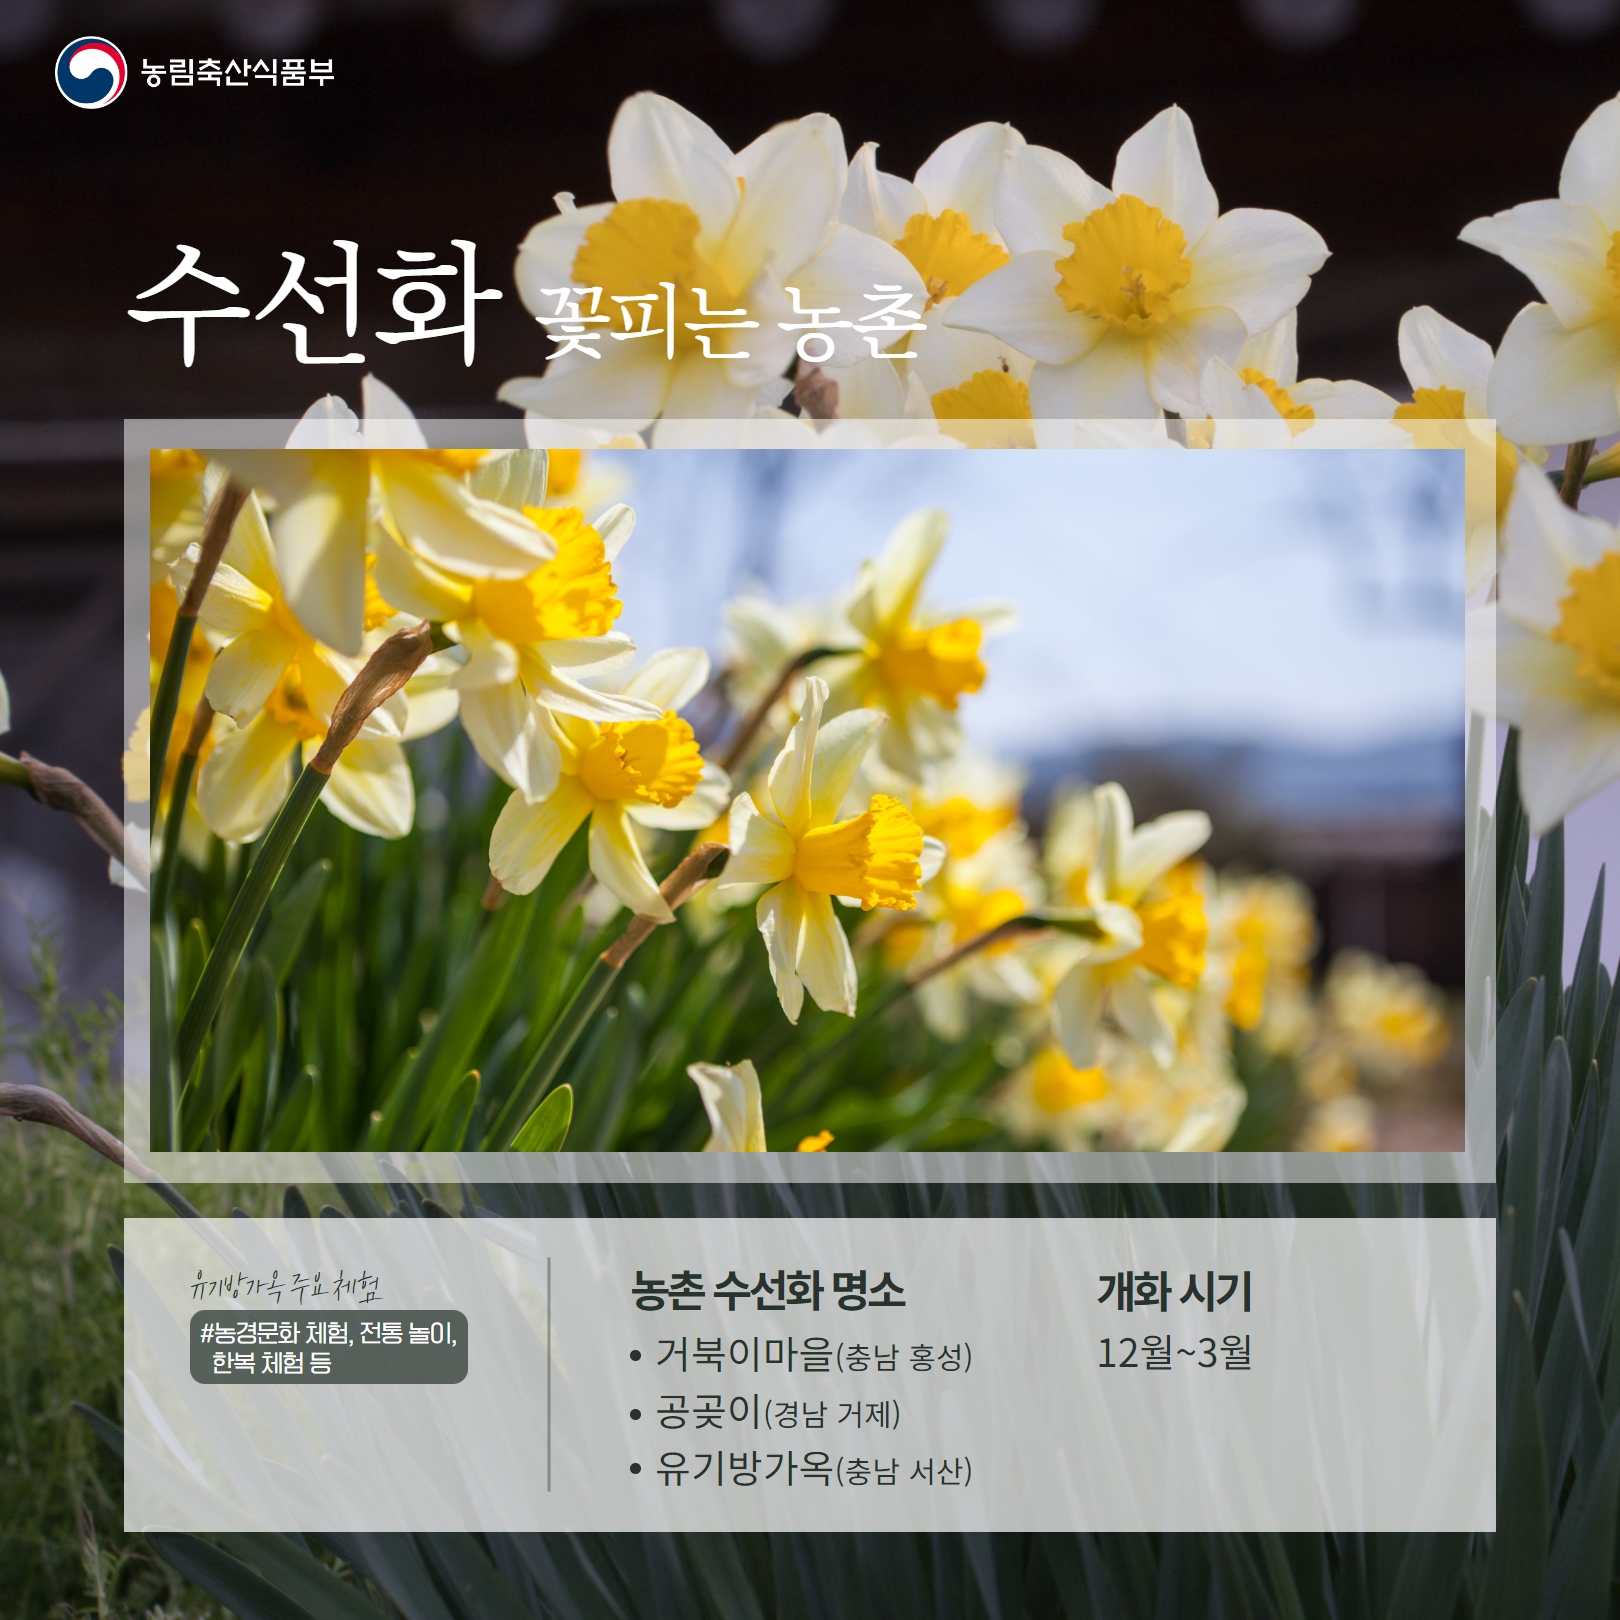 완연한 봄날씨에 농촌으로 꽃구경 가세요! (봄꽃 농촌 여행지 소개)  꽃 개화시기 6.jpg